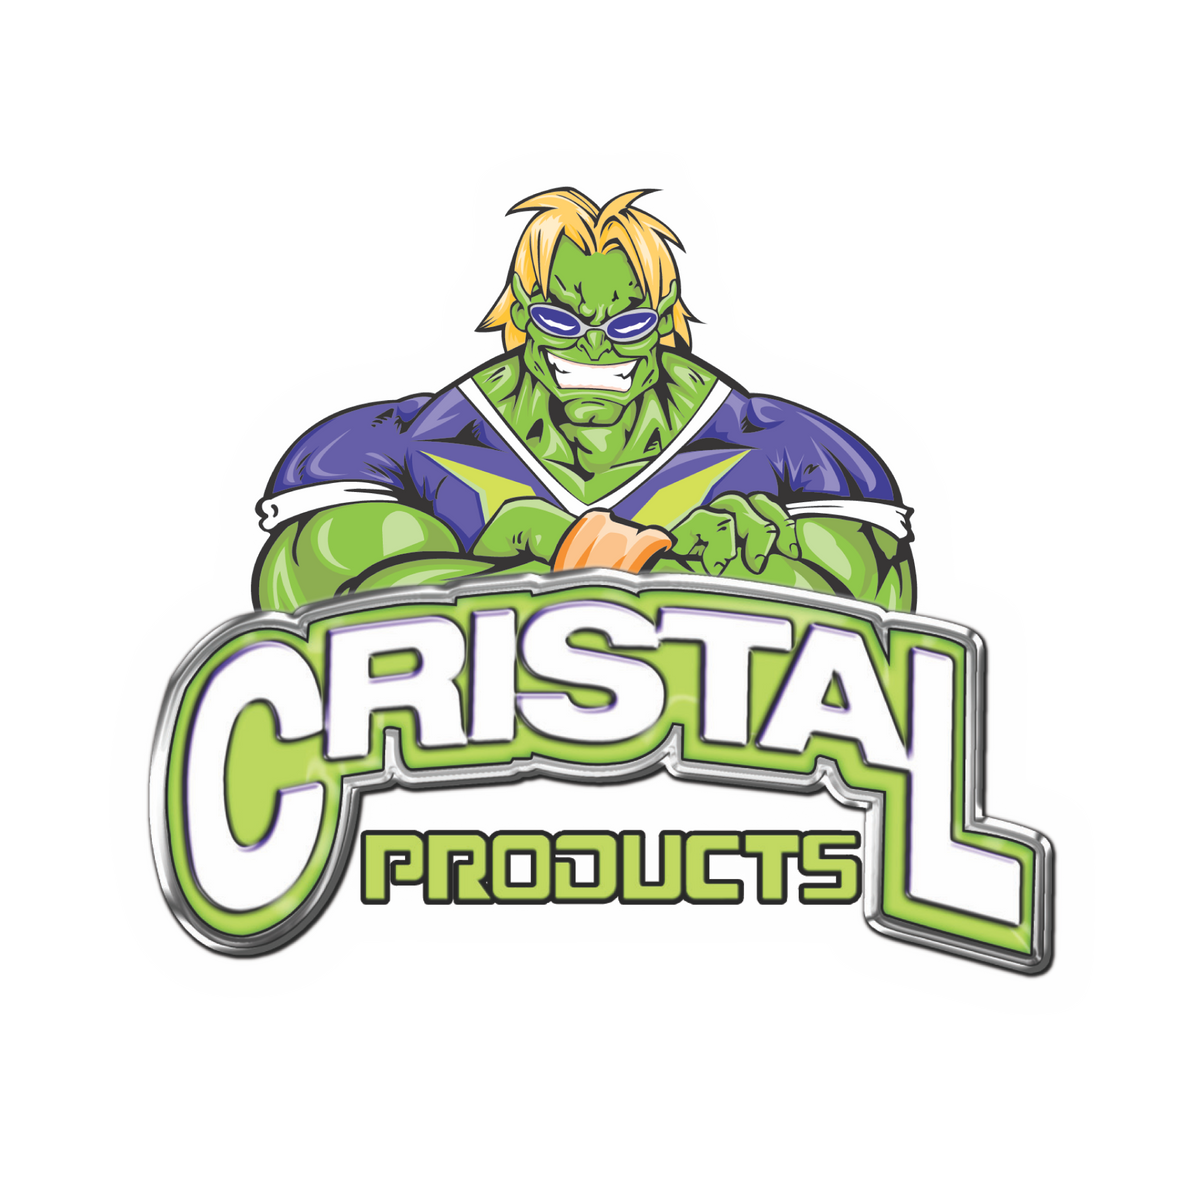 http://buycristalproducts.com/cdn/shop/files/cristal-products-logo_f107b062-831e-4156-9f74-2bc77631173c_1200x1200.png?v=1613544558